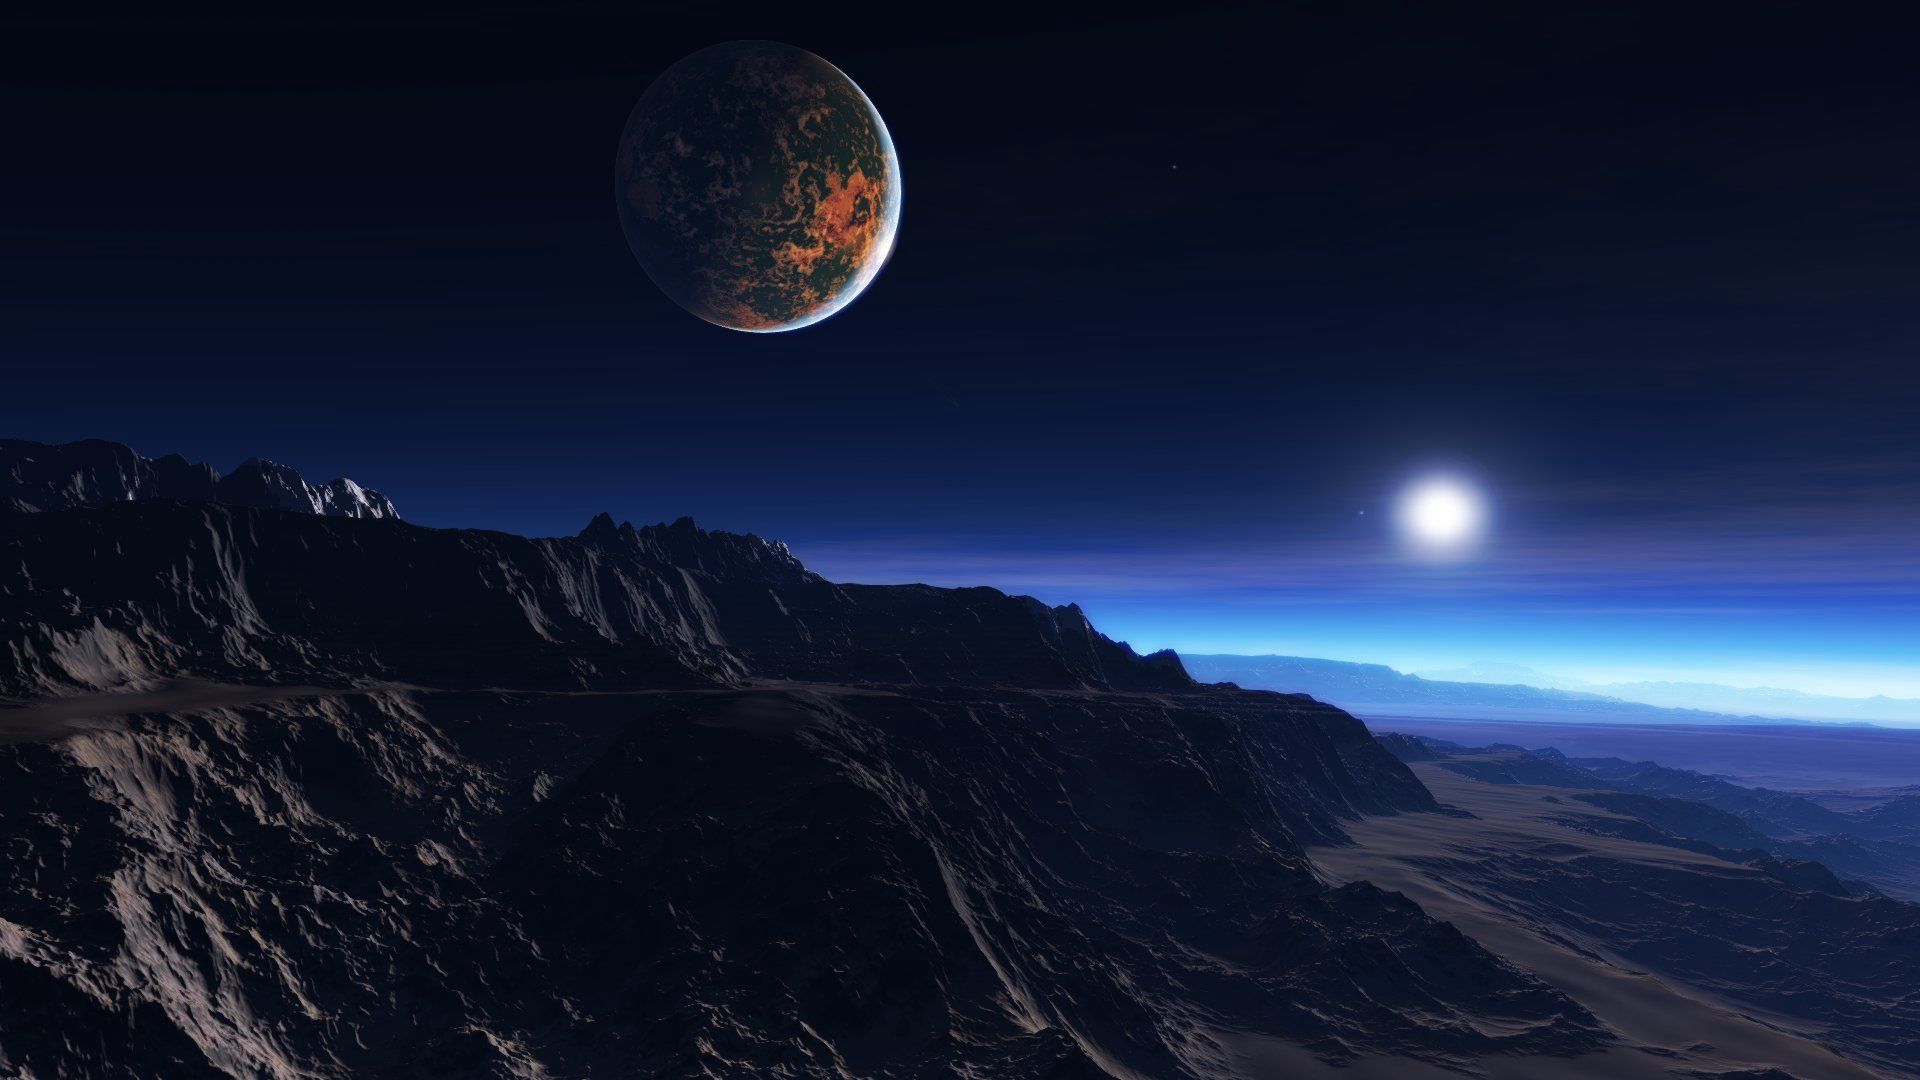 Exoplanet Background. Exoplanet